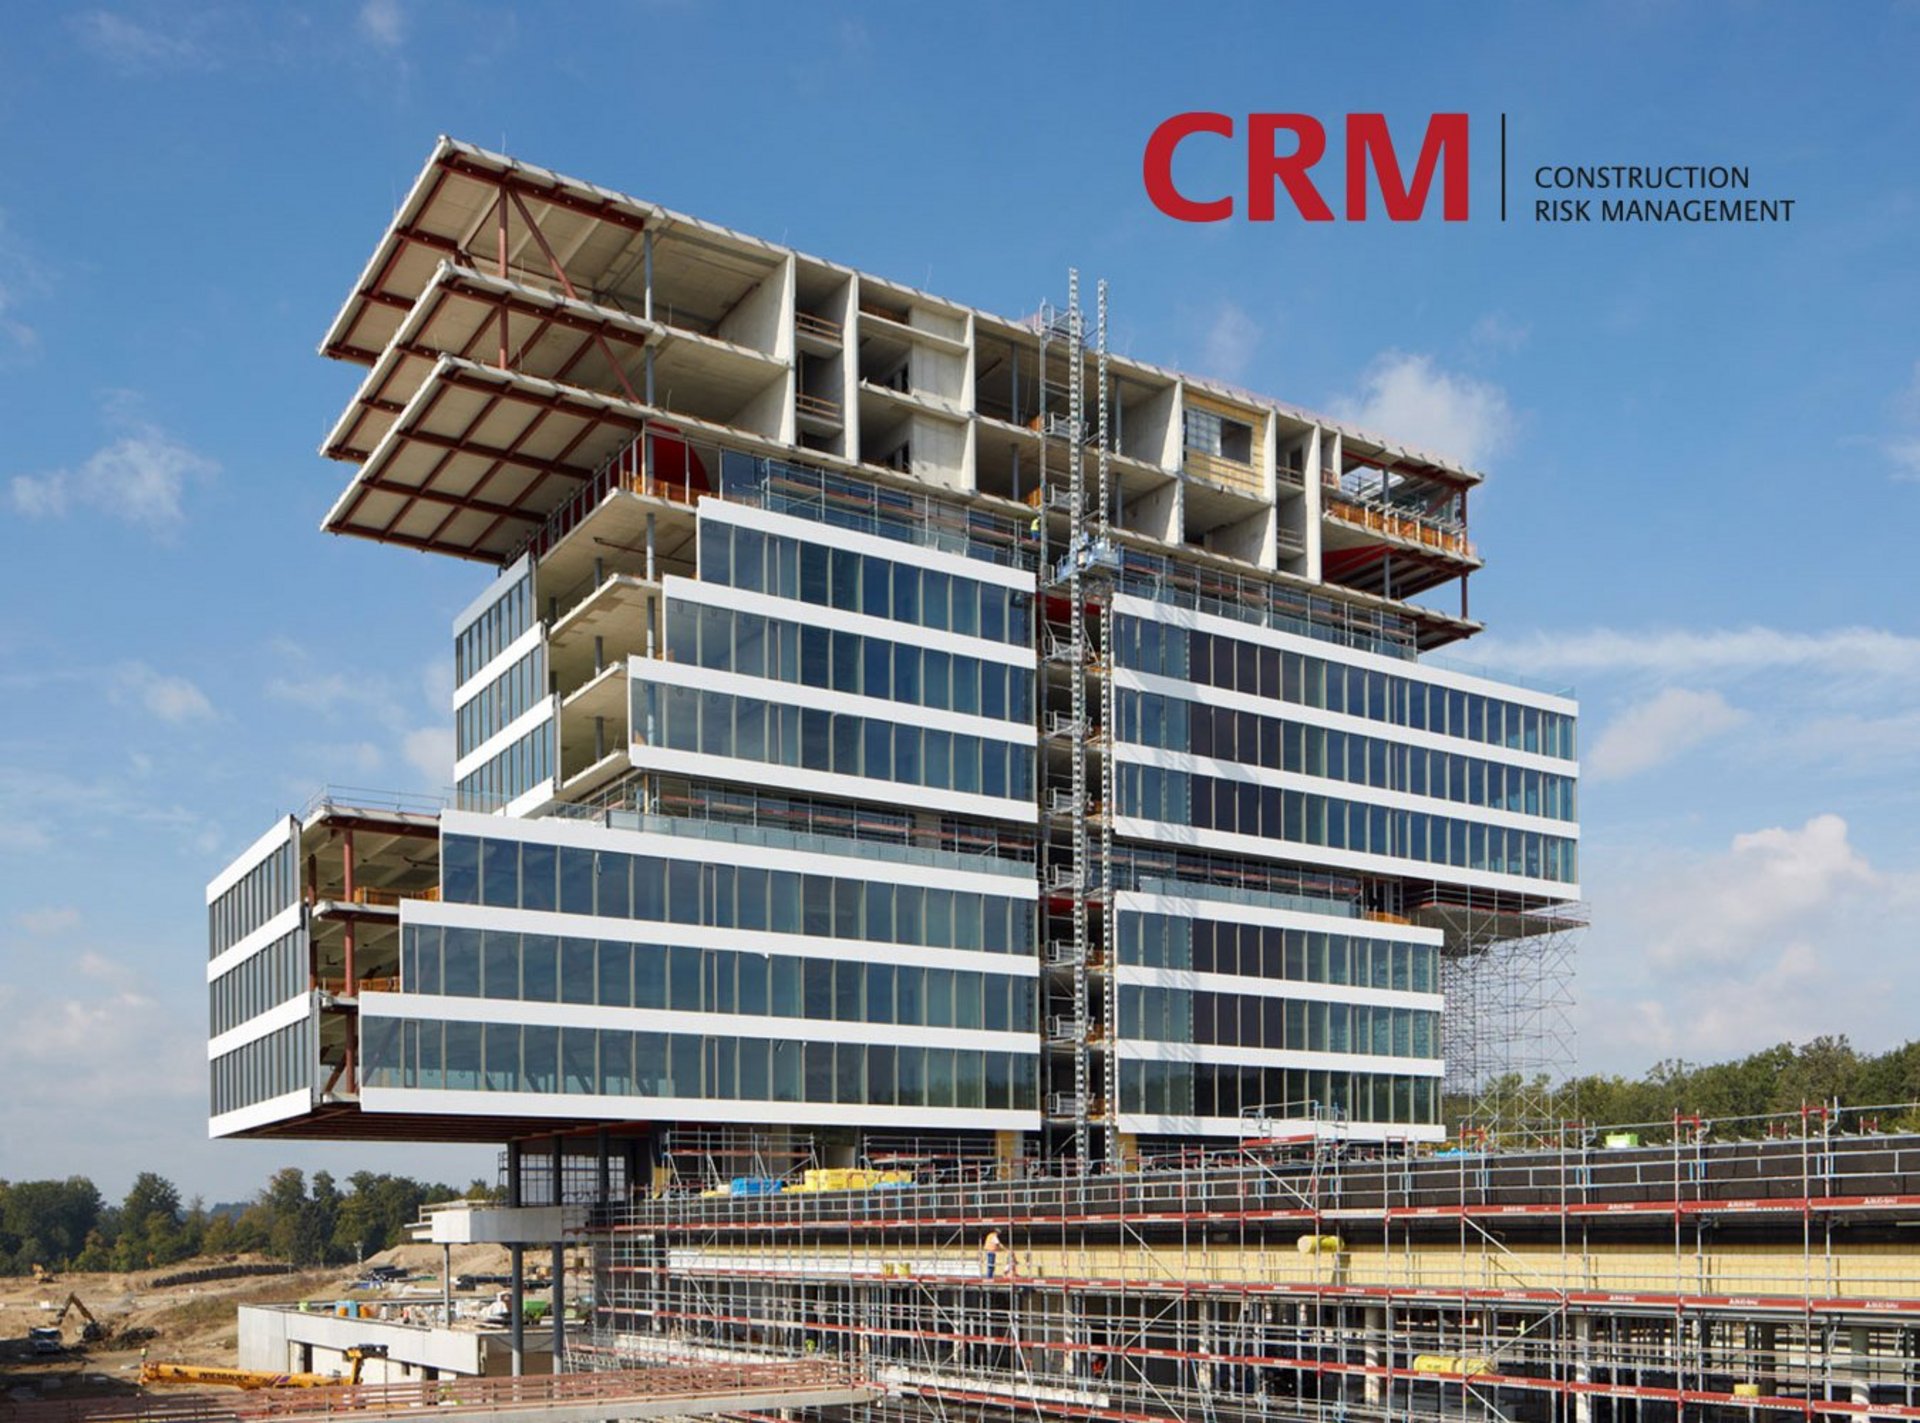 Baustelle CRM Construction Risk Management